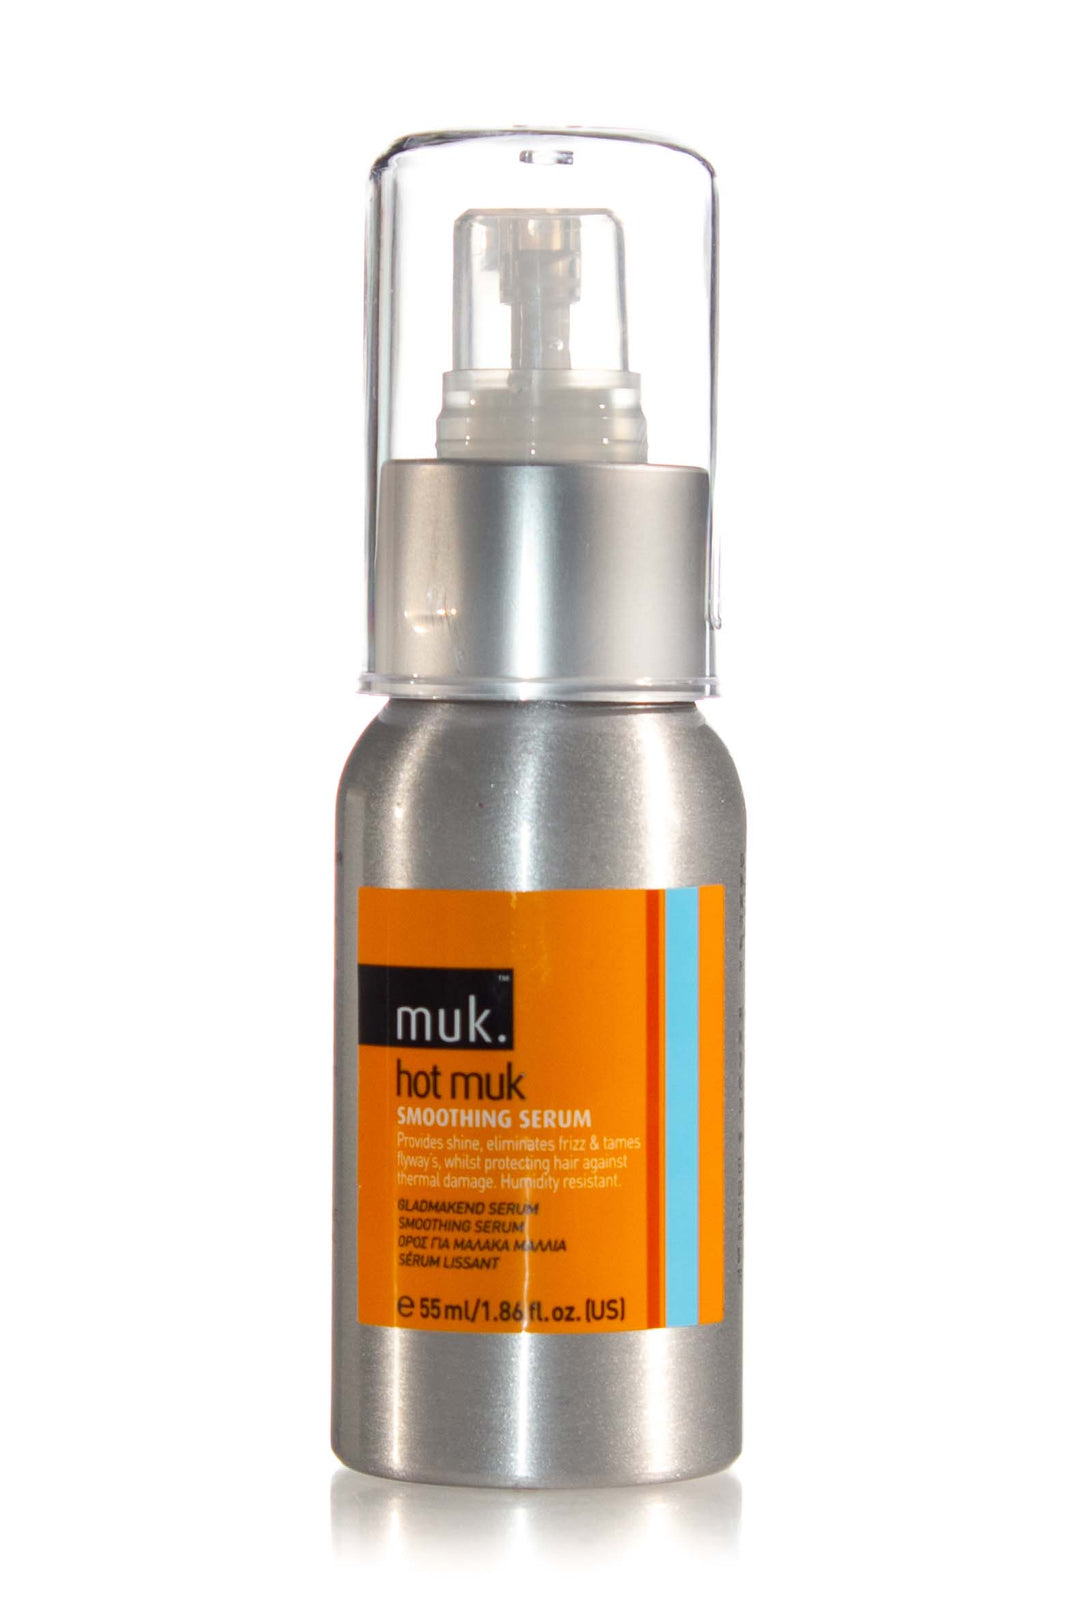 muk-hot-muk-smoothing-serum-55ml